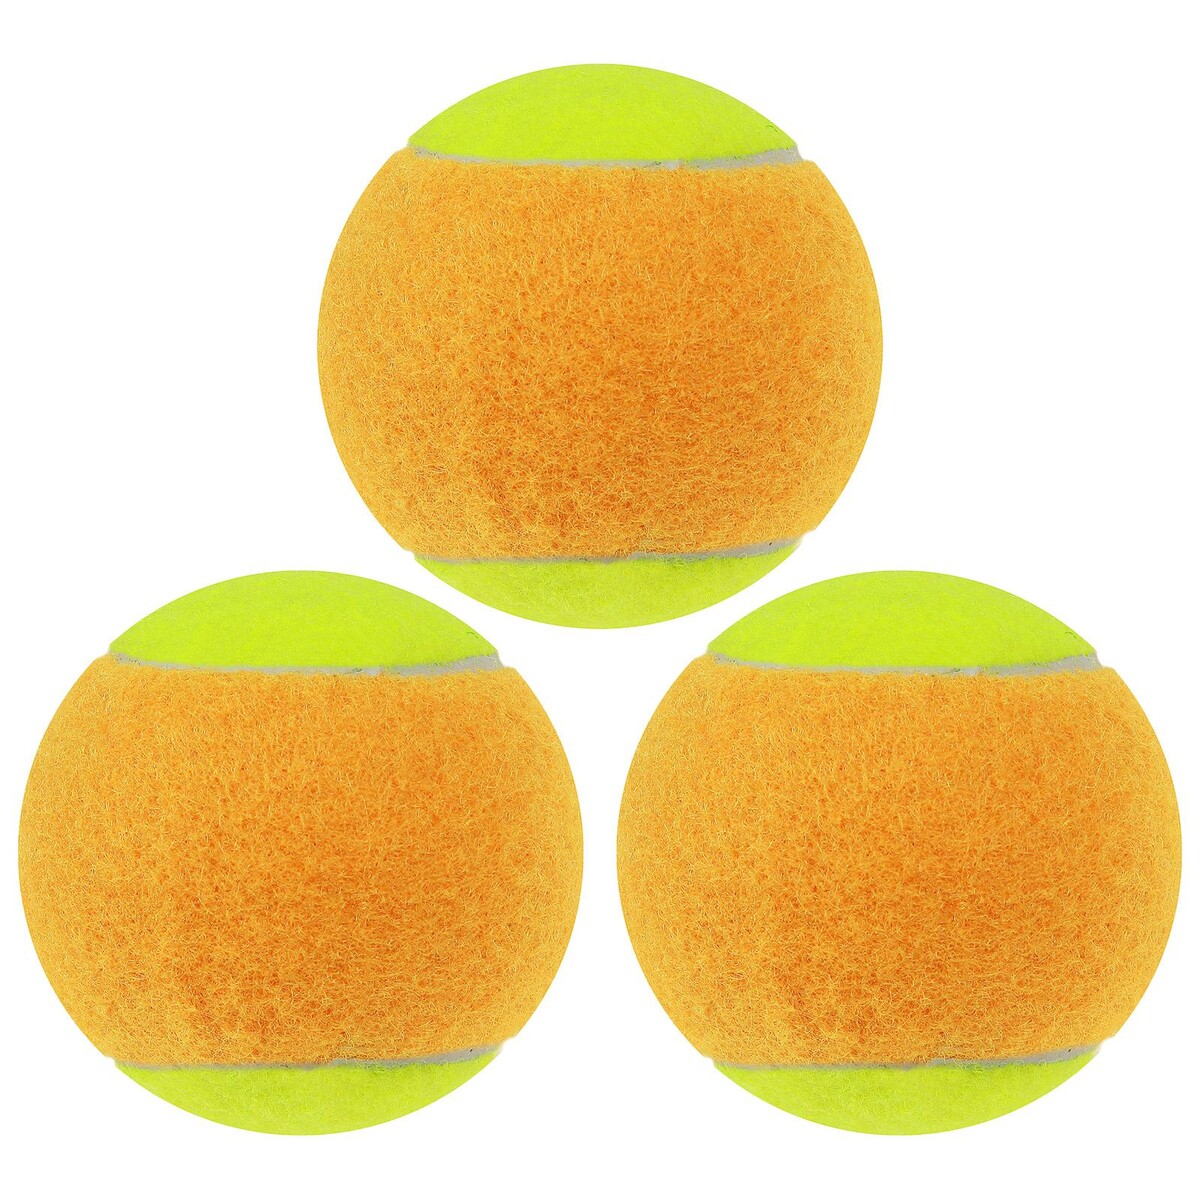 Набор мячей для большого тенниса onlytop swidon, 3 шт. набор мячей для большого тенниса swidon 969 тренировочный 3 шт